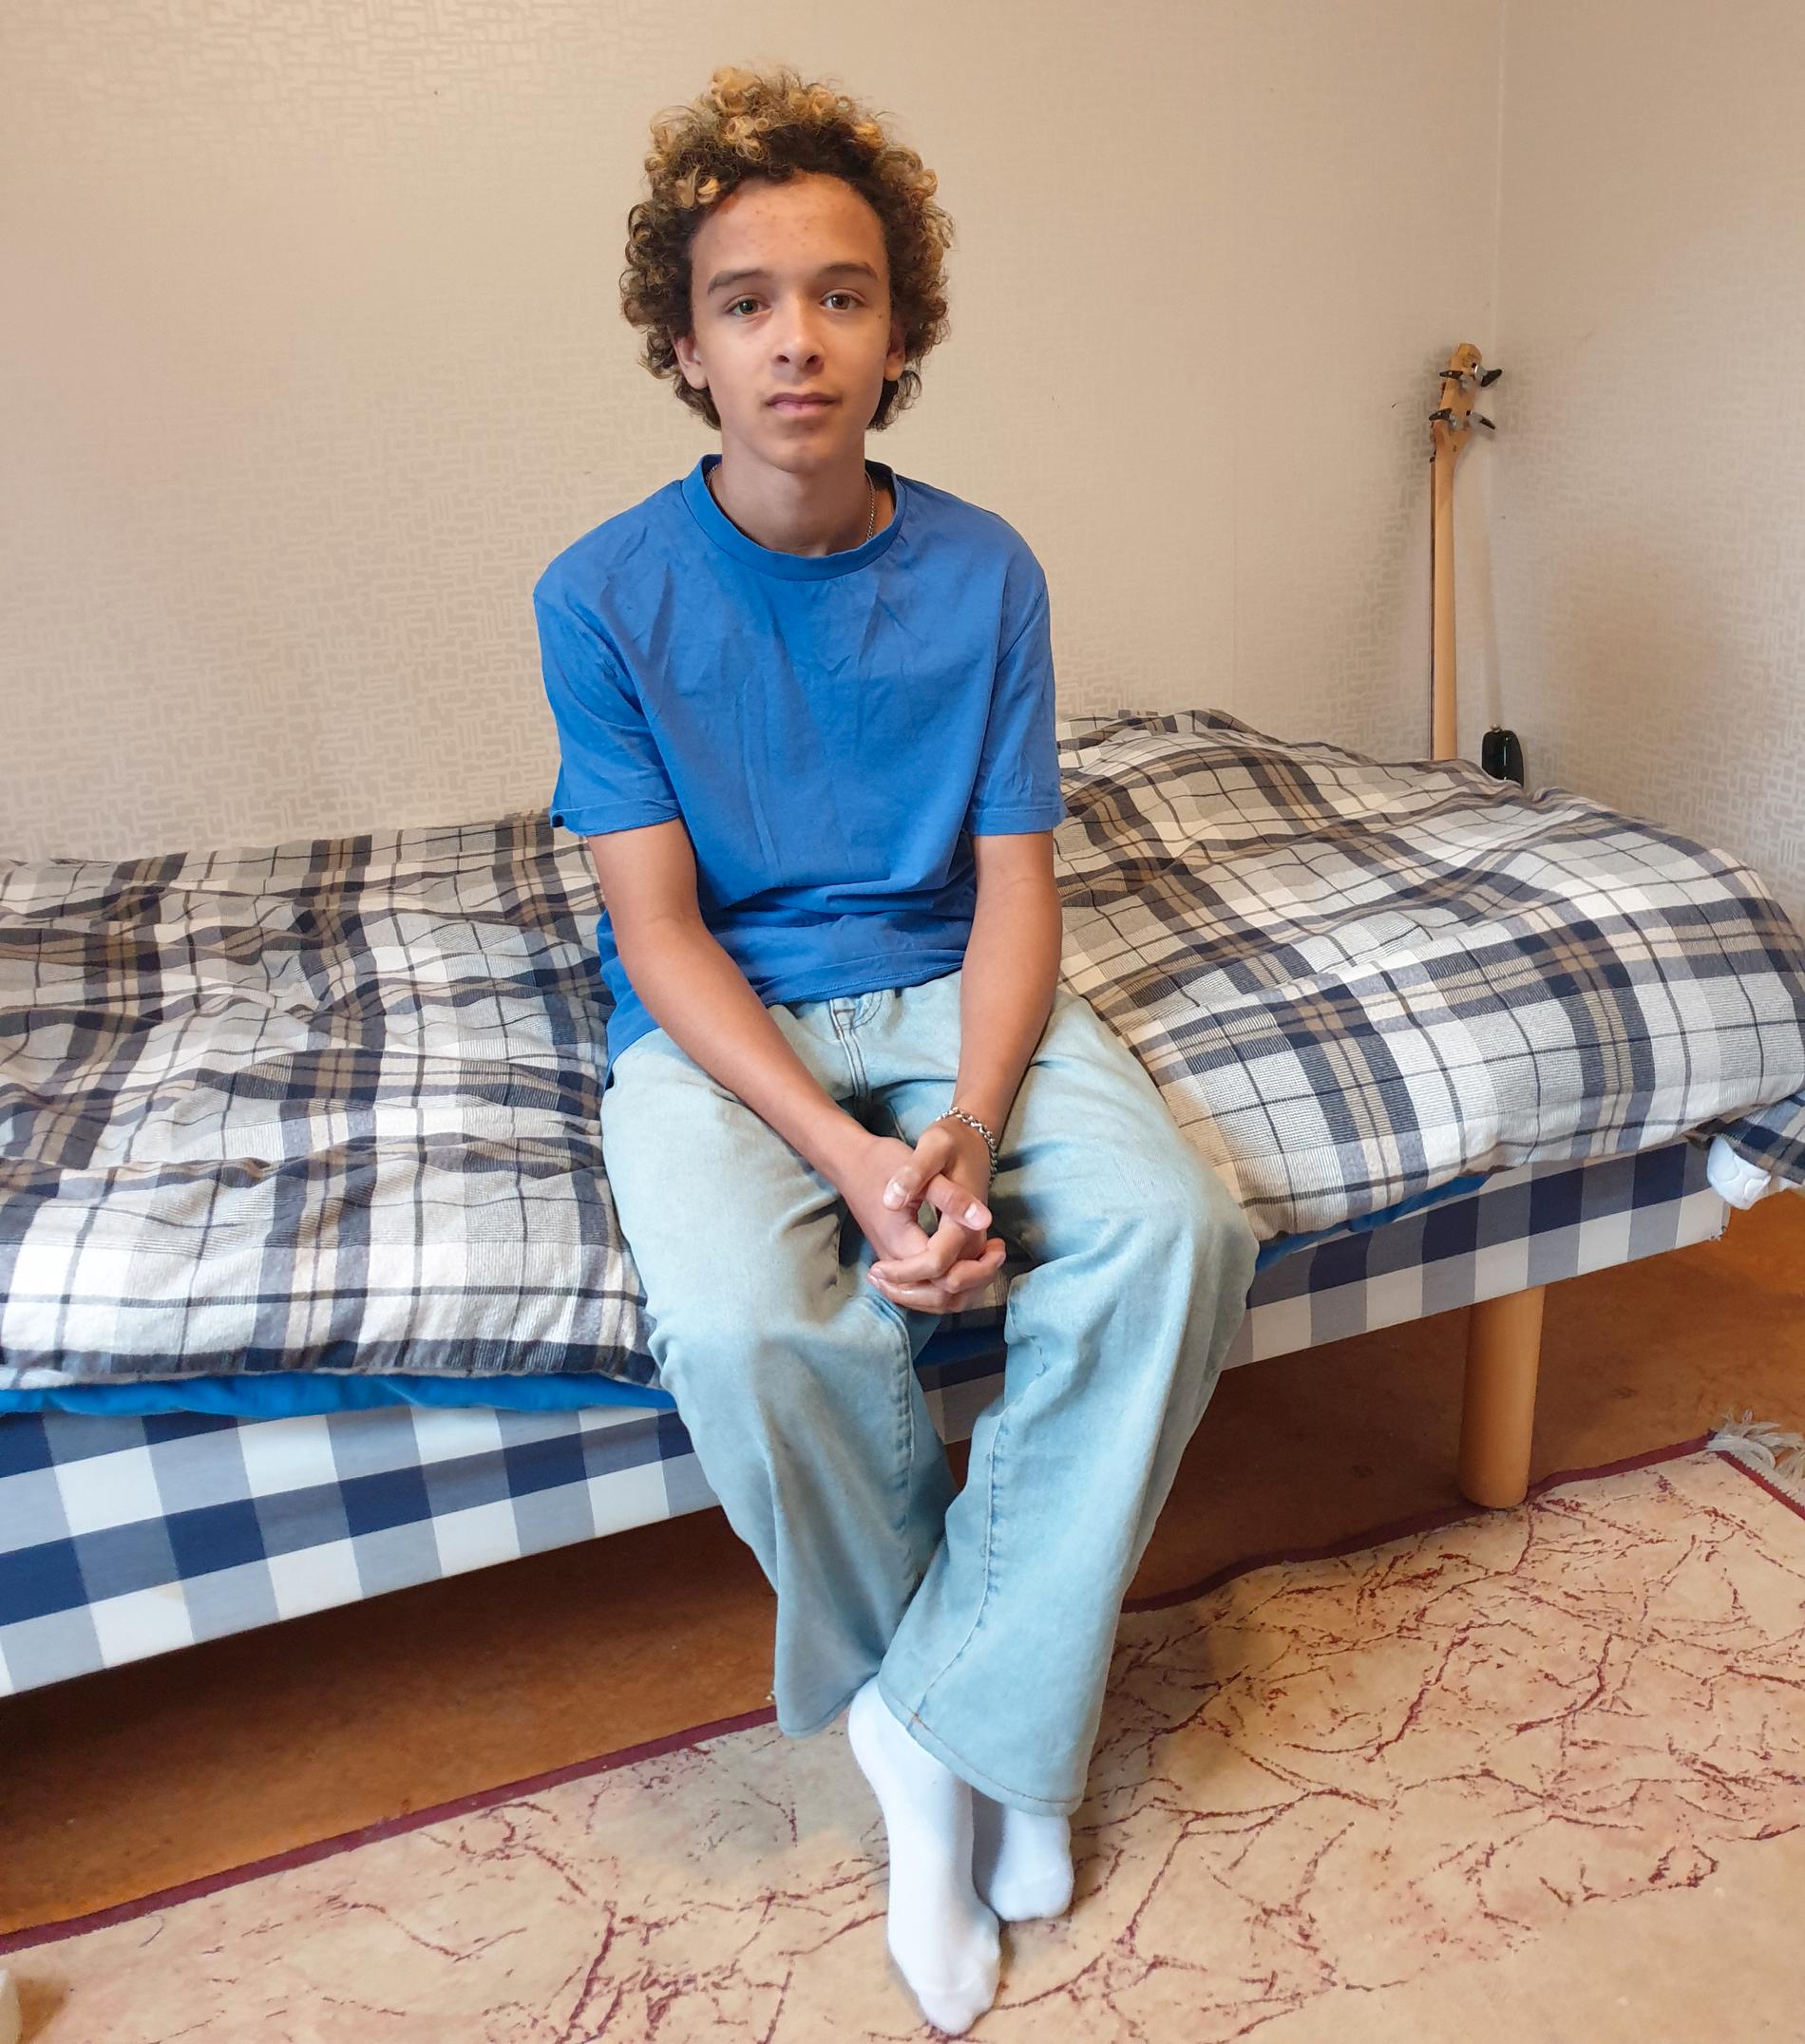 Dan Michael Broberg, 15, ska vräkas från sin lägenhet i Solna.